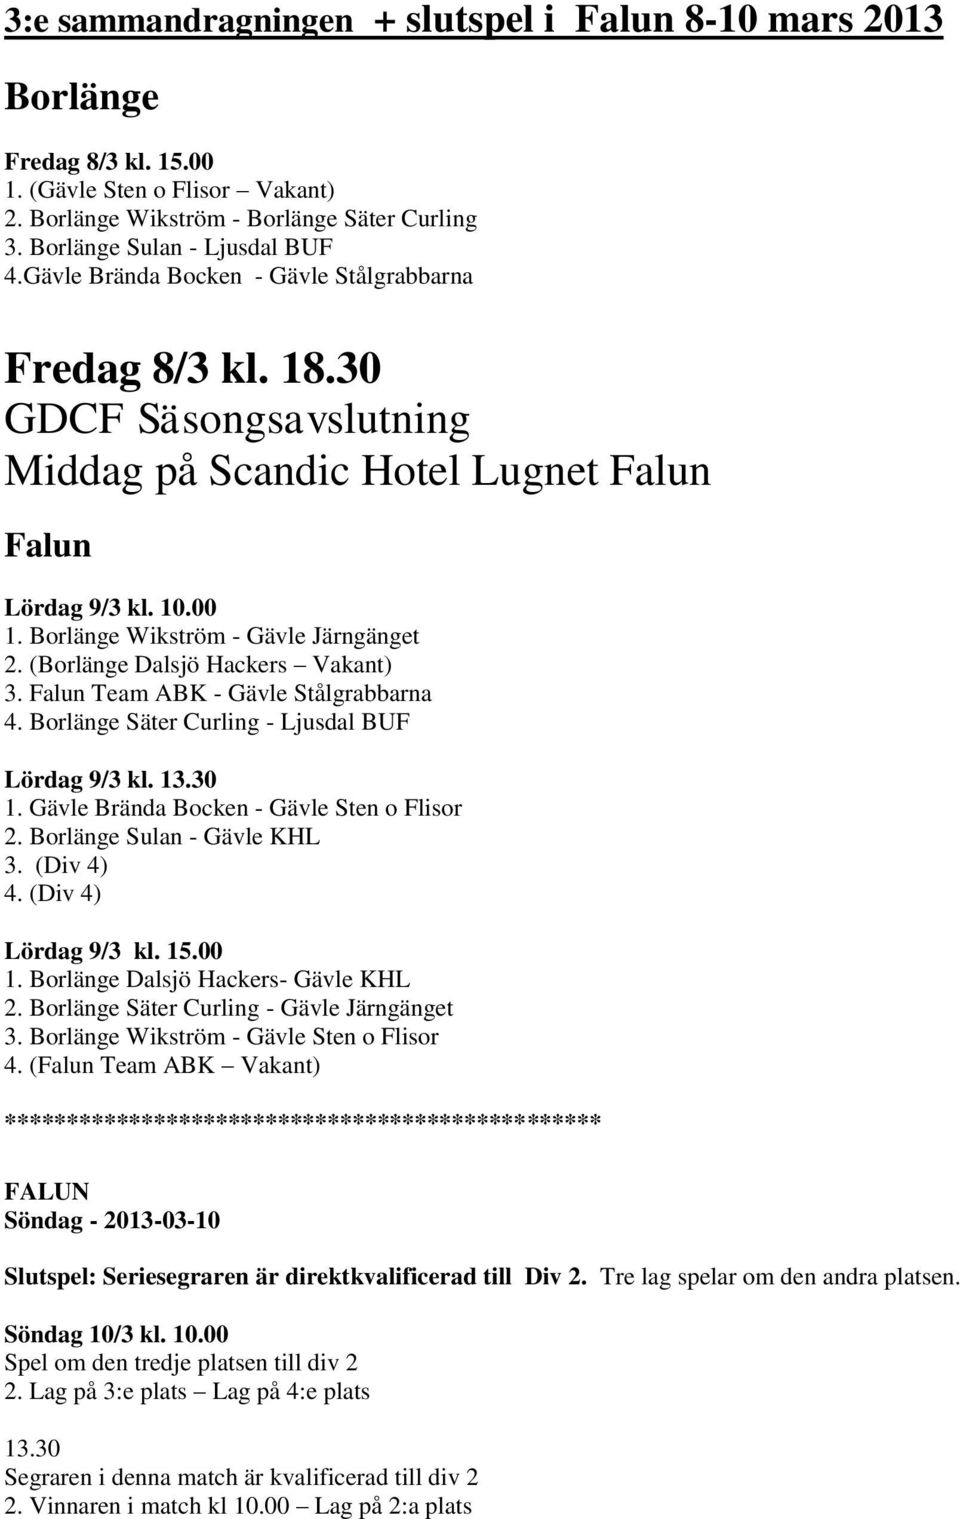 (Borlänge Dalsjö Hackers Vakant) 3. Falun Team ABK - Gävle Stålgrabbarna 4. Borlänge Säter Curling - Ljusdal BUF Lördag 9/3 kl. 13.30 1. Gävle Brända Bocken - Gävle Sten o Flisor 2.